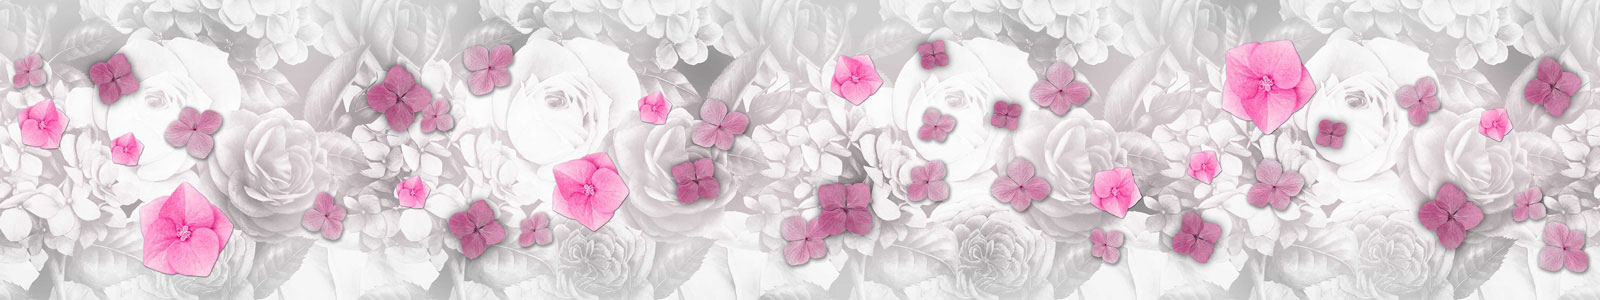 №5044 - Цветочки гортензии на фоне акварельных цветов